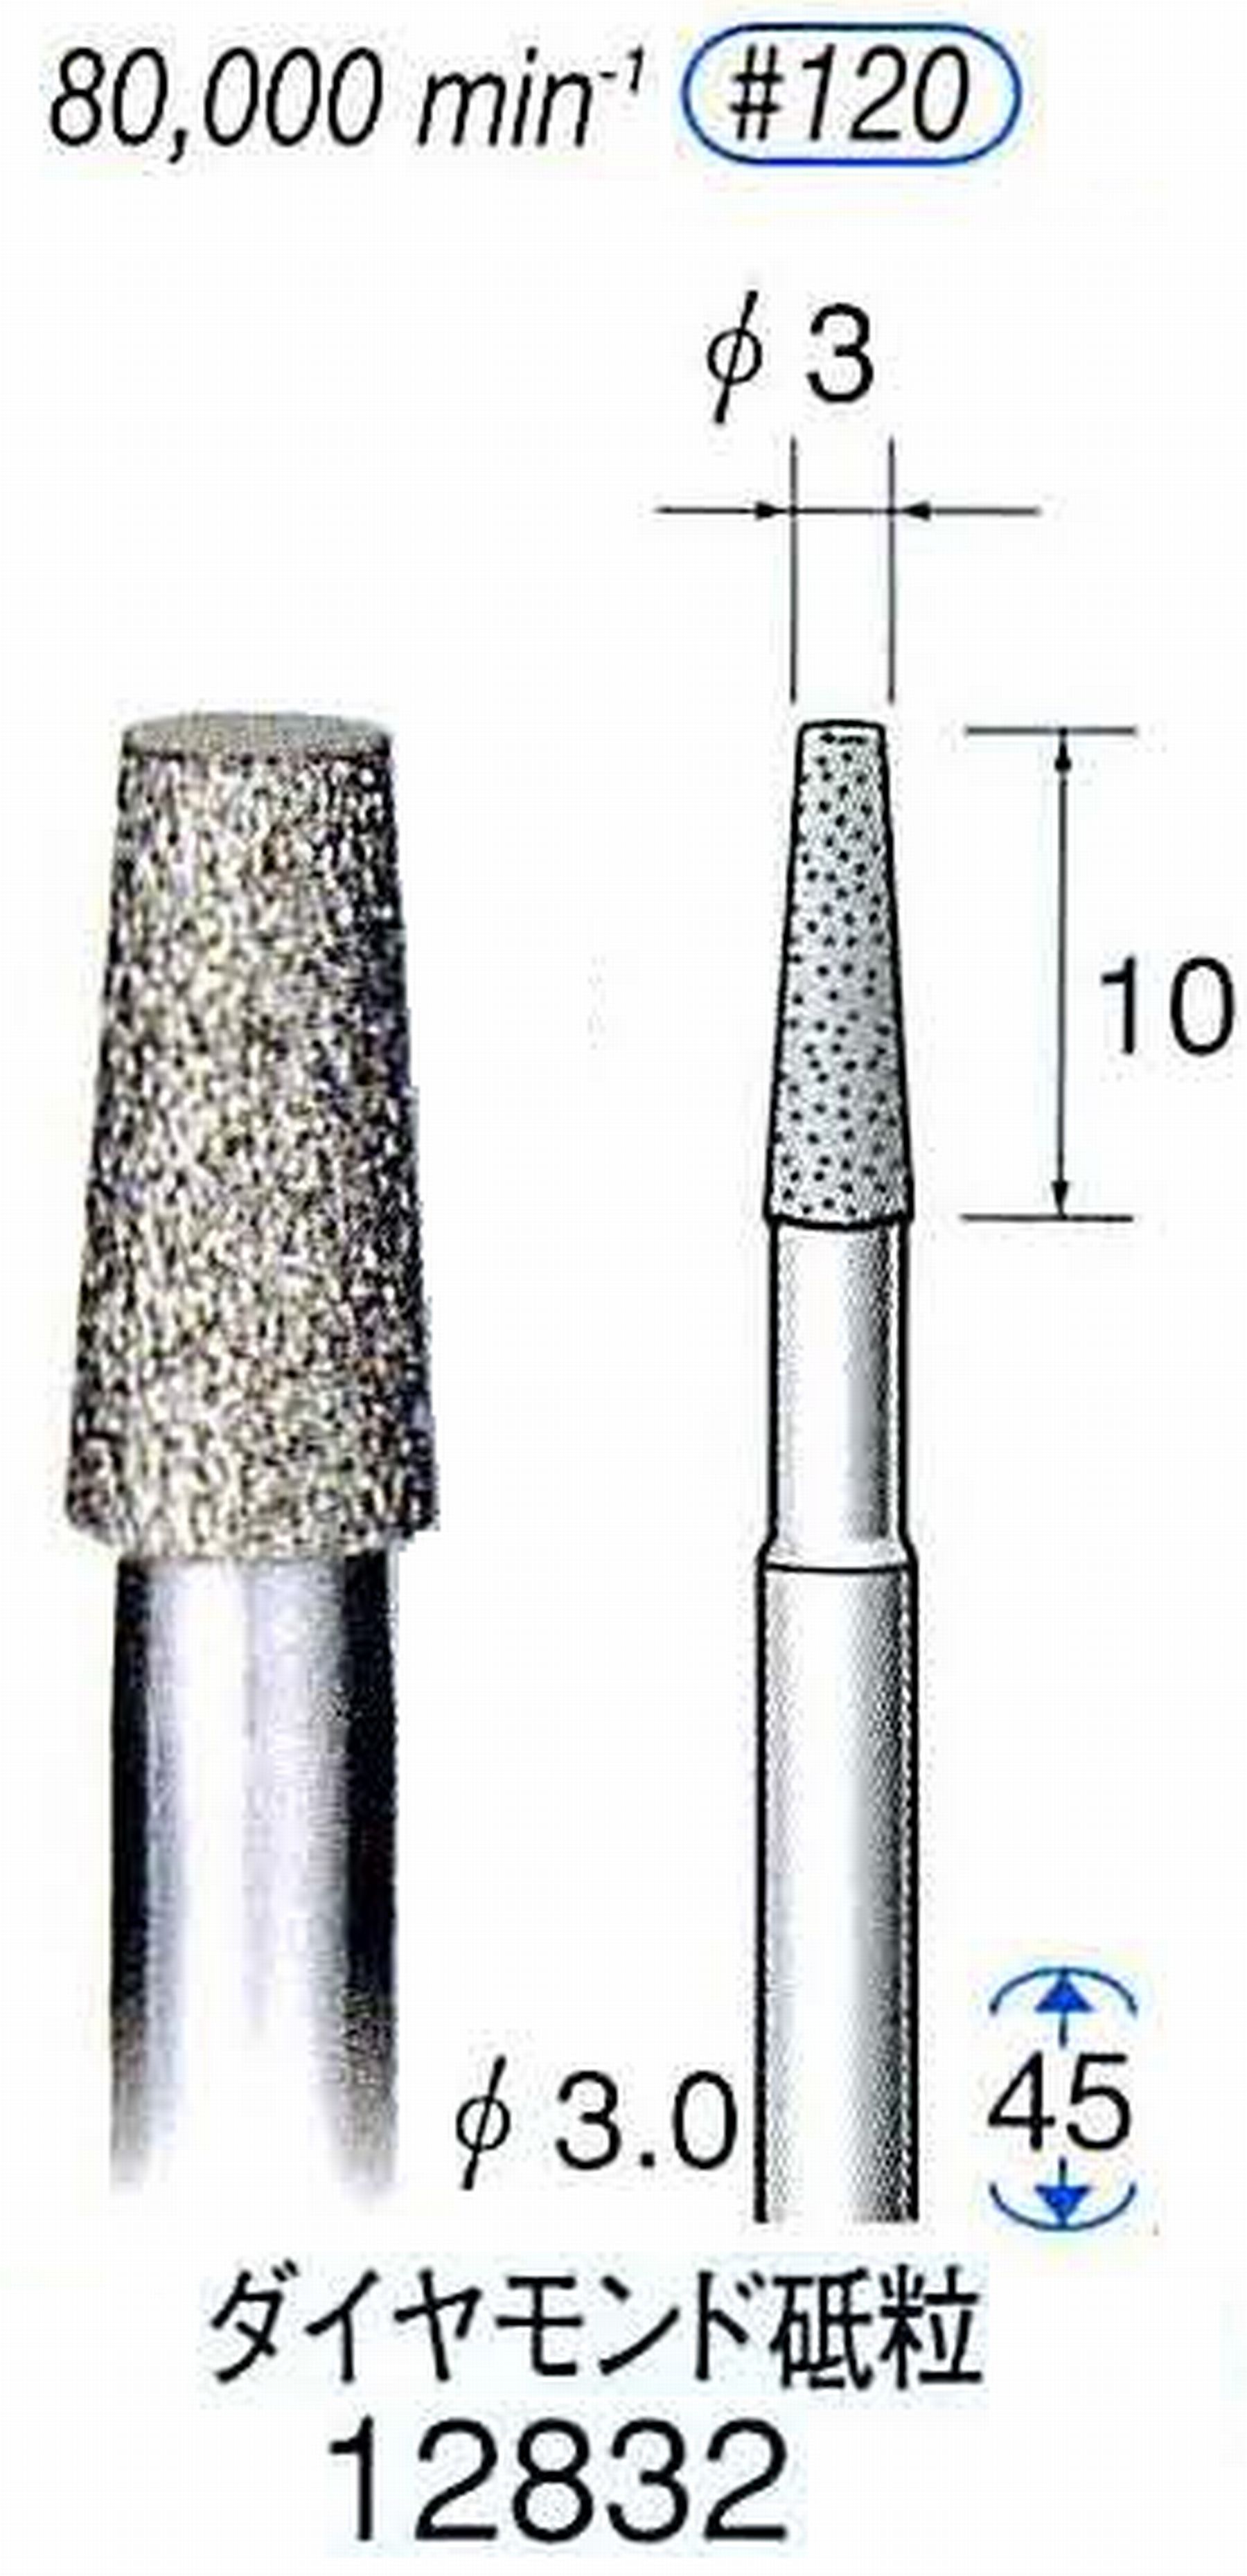 ナカニシ/NAKANISHI クラフト・ホビー用ダイヤモンドバー ダイヤモンド砥粒 軸径(シャンク)φ3.0mm 12832